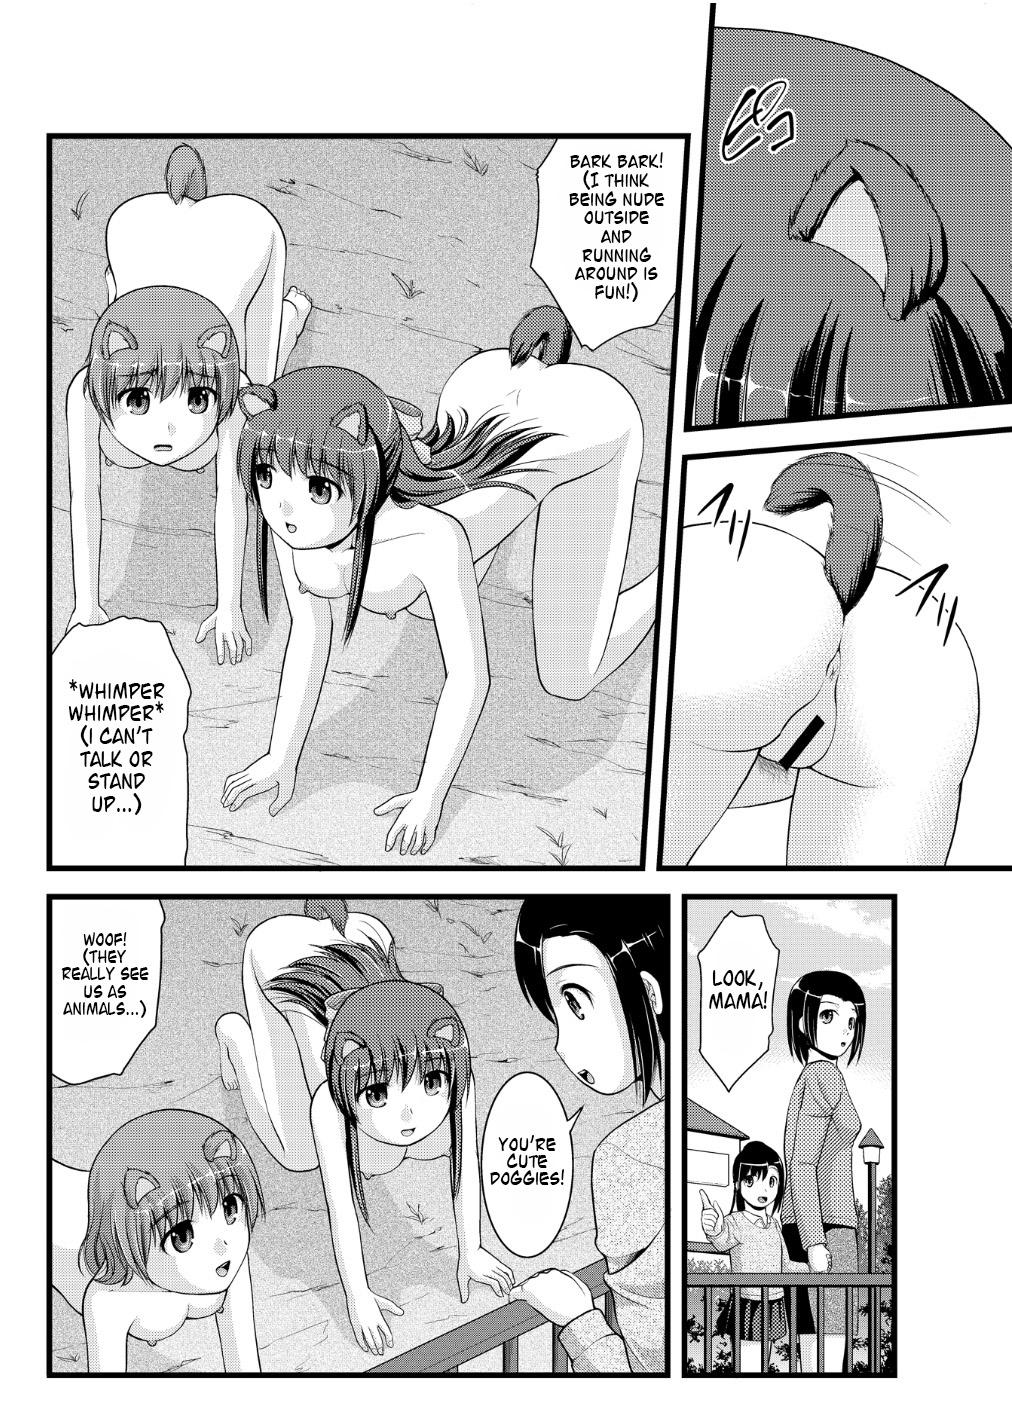 Stepson [Shinenkan] Joutaihenka Manga vol. 4 ~Umareta mama no Sugata de~ | Transformation Comics Vol. 4 ~In Their Natural Born Figure~ [English] Asian Babes - Page 6